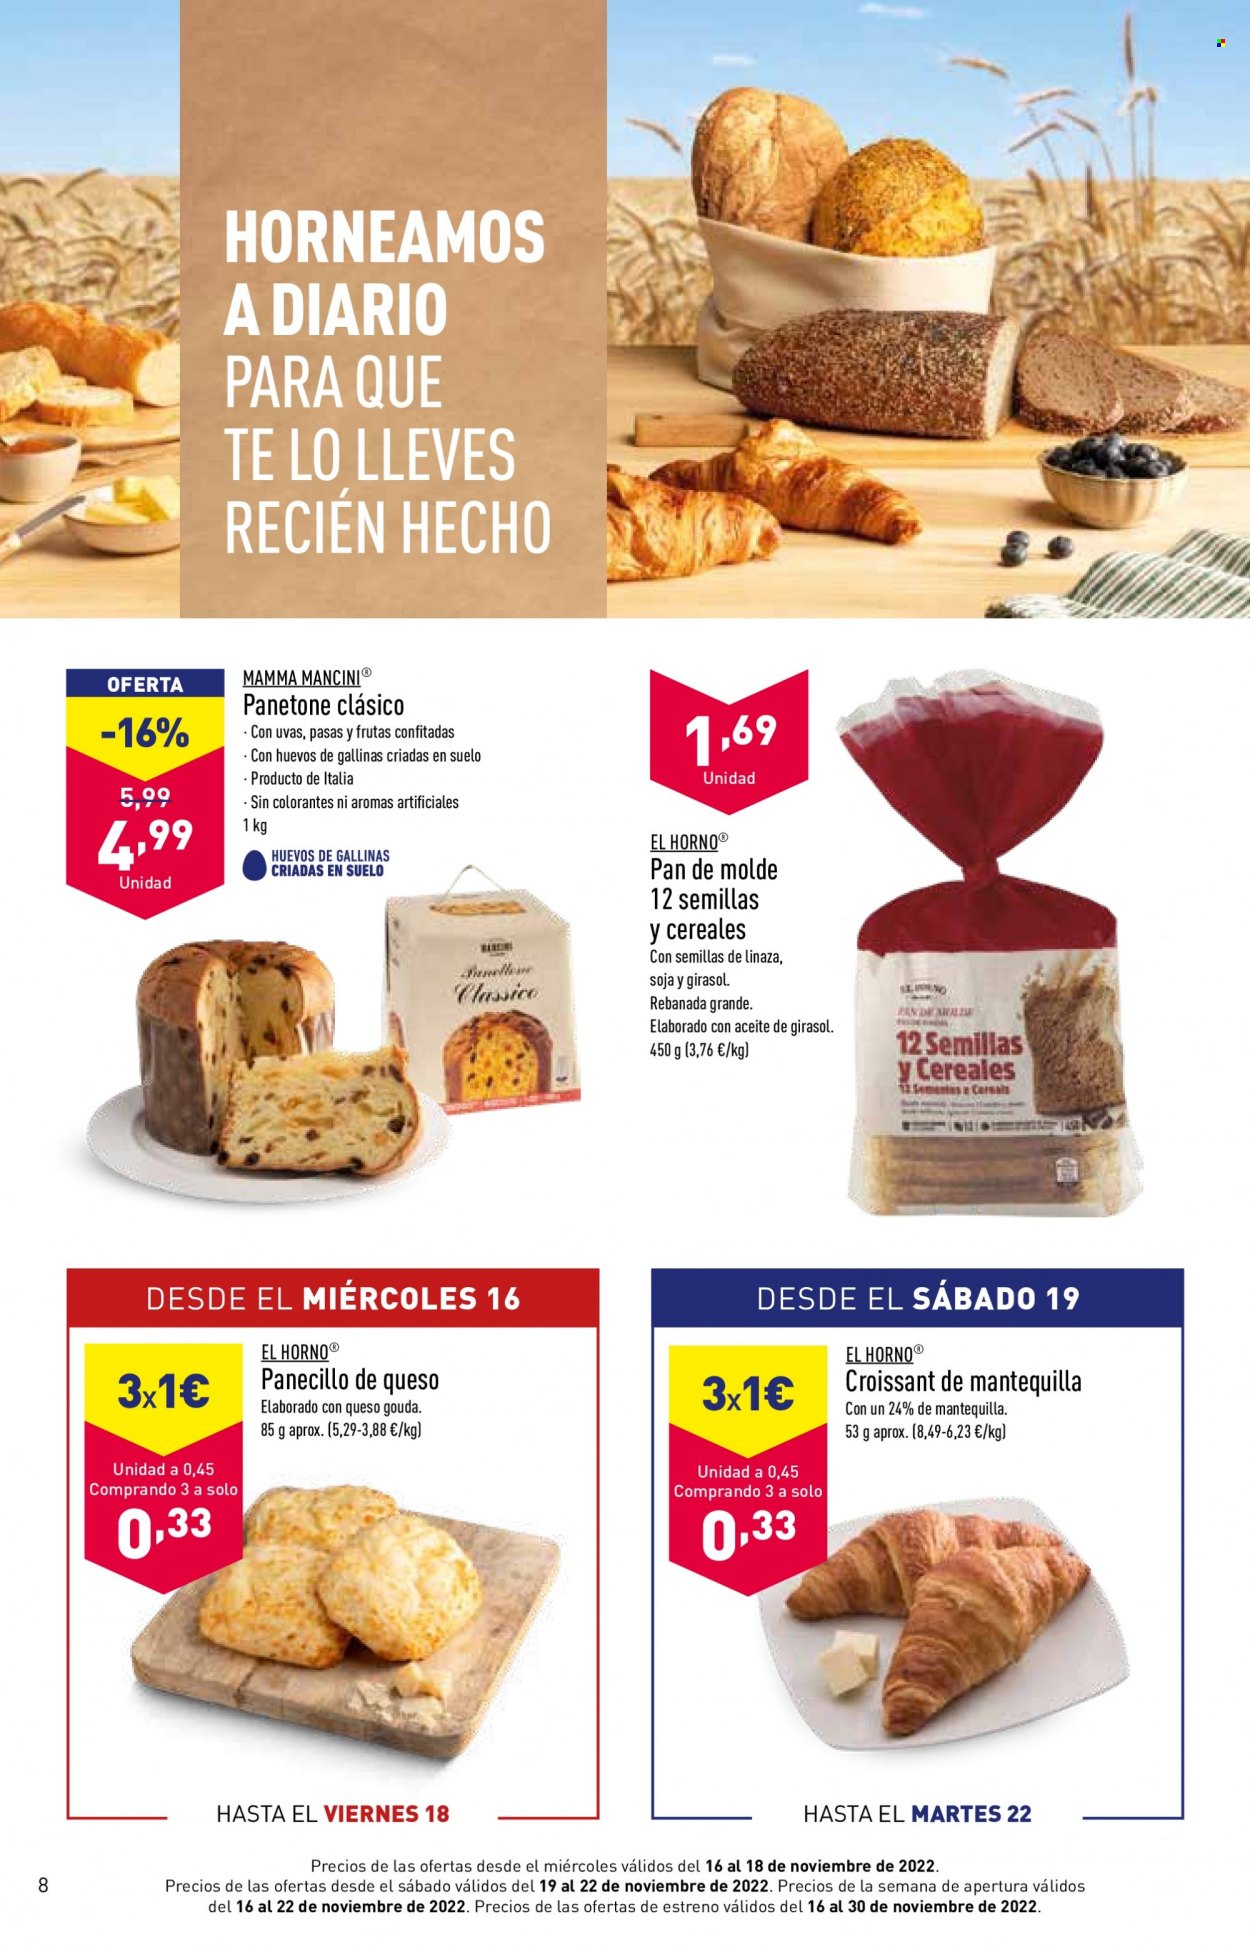 thumbnail - Folleto actual Aldi - 16/11/22 - 14/12/22 - Ventas - uva, pan de molde, panecillo, croissant, panettone, pan. Página 8.